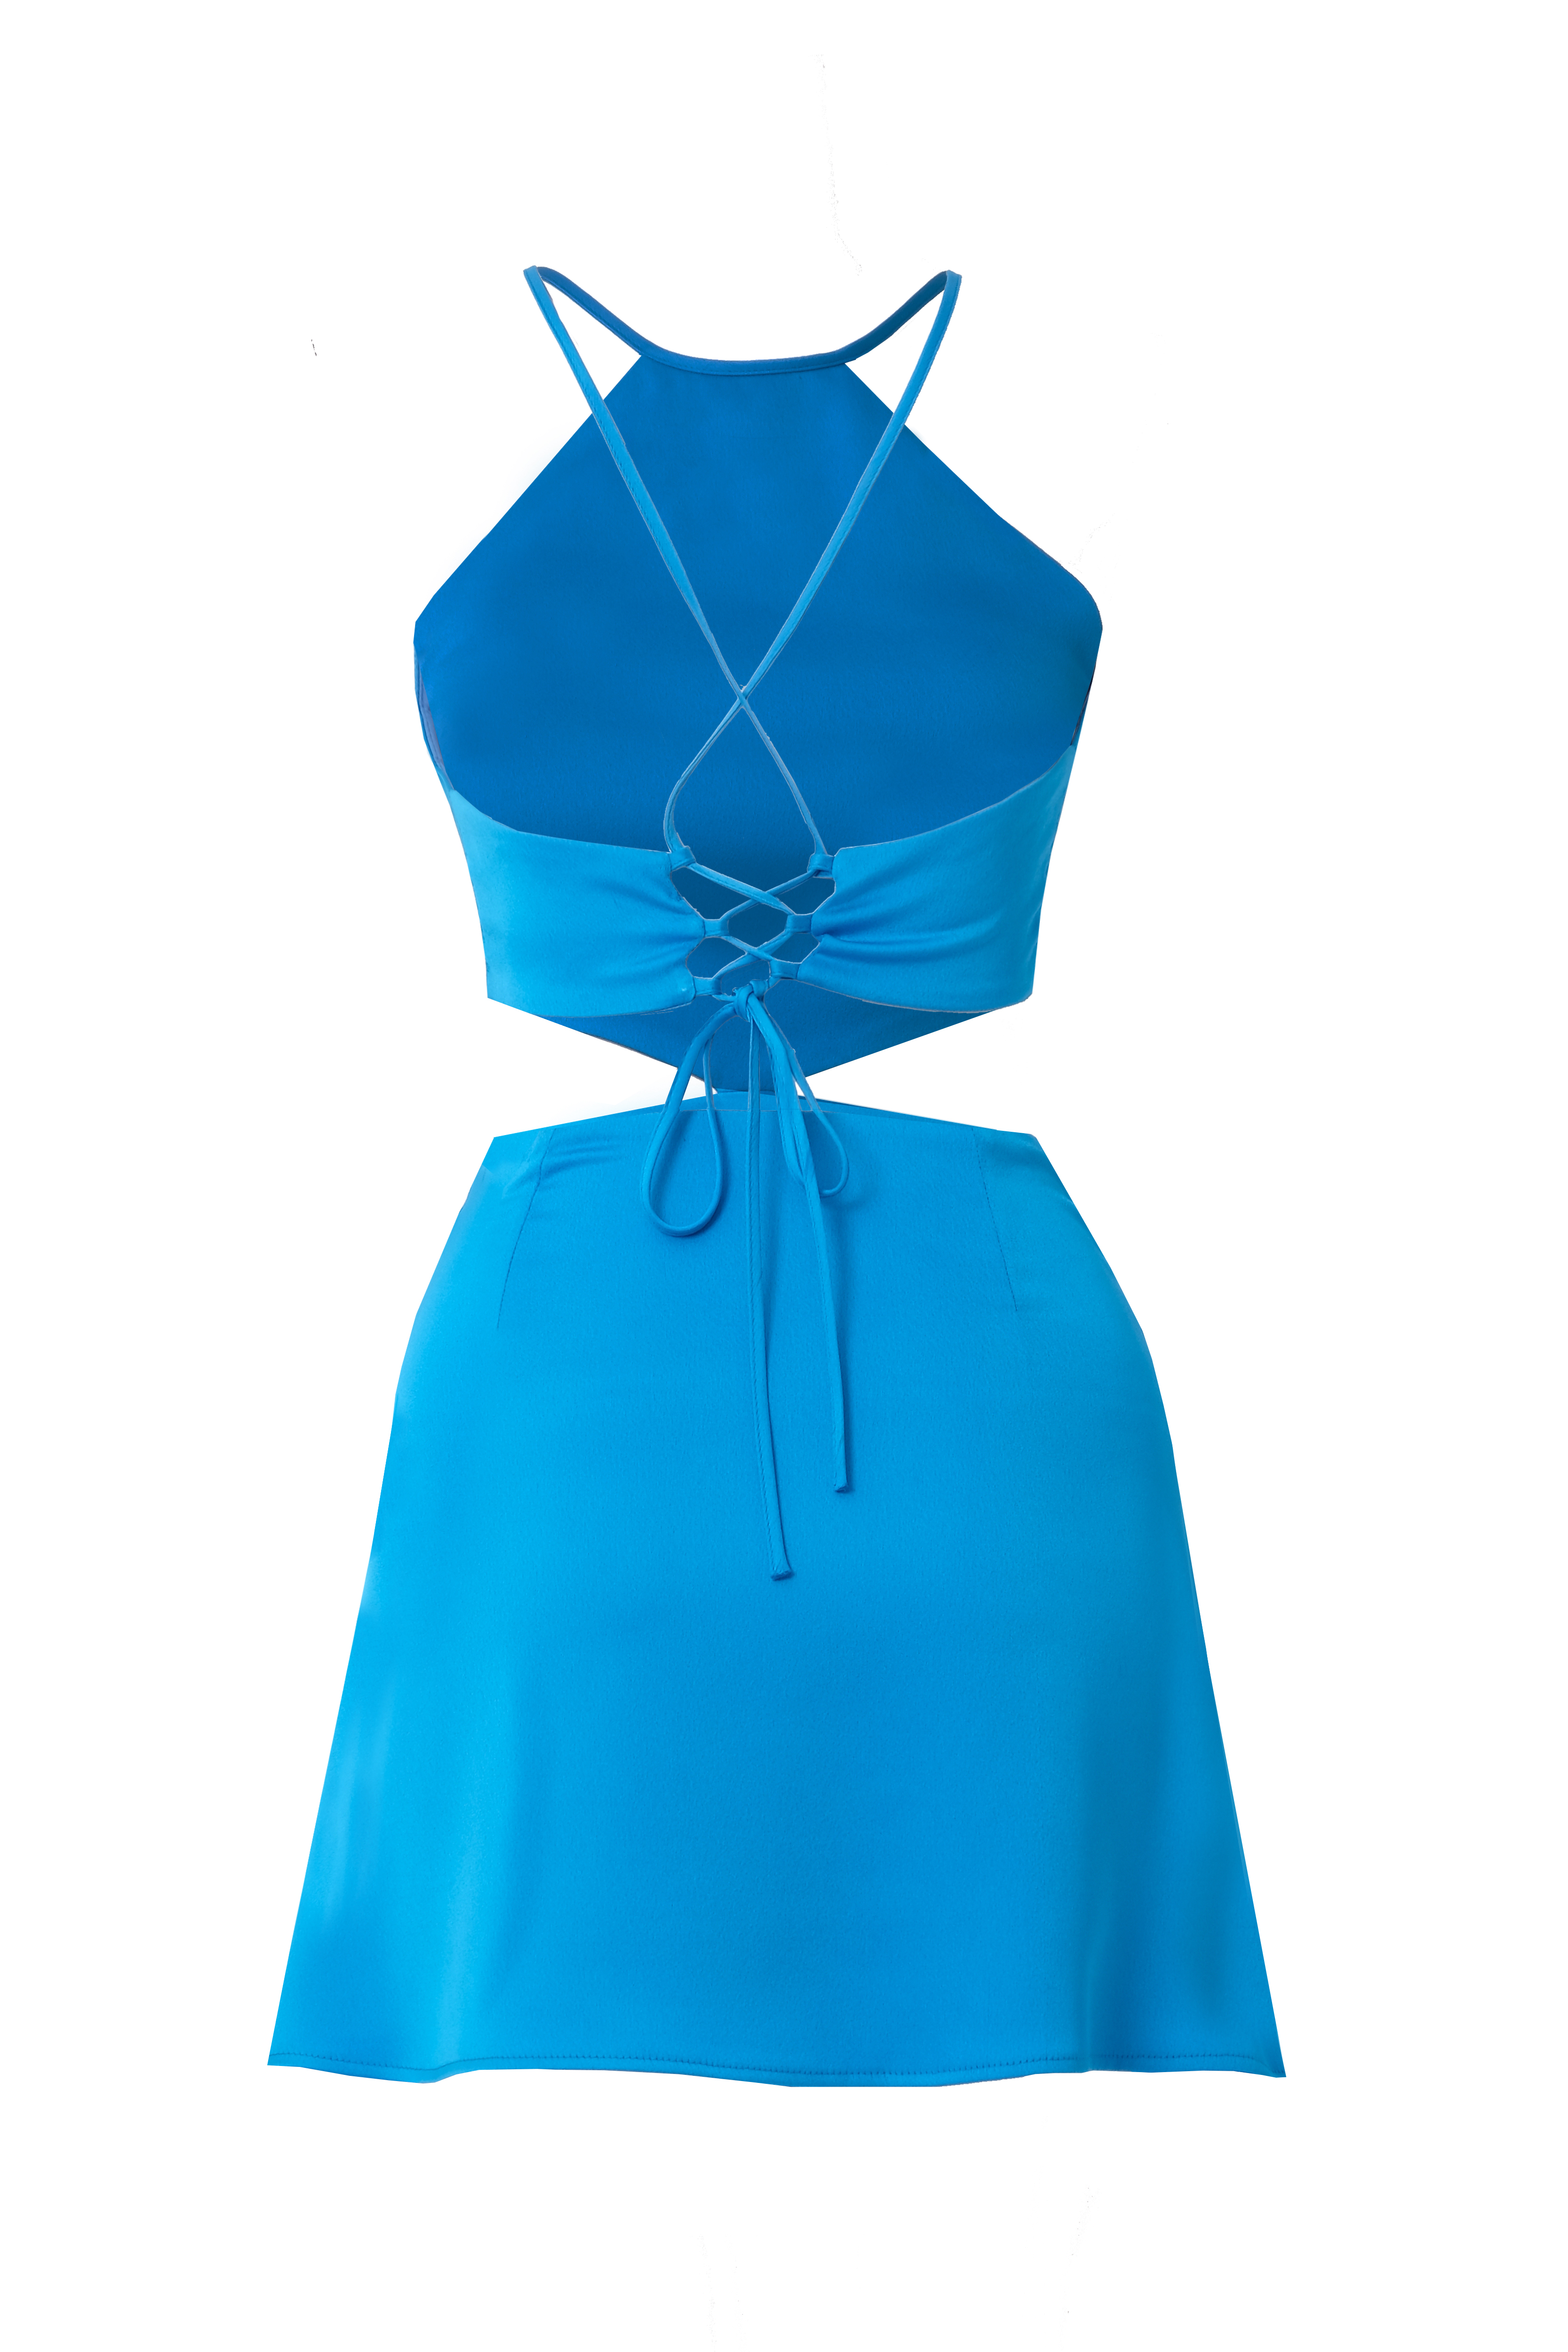  BAXLEY Halter Neck Mini Blue Dress